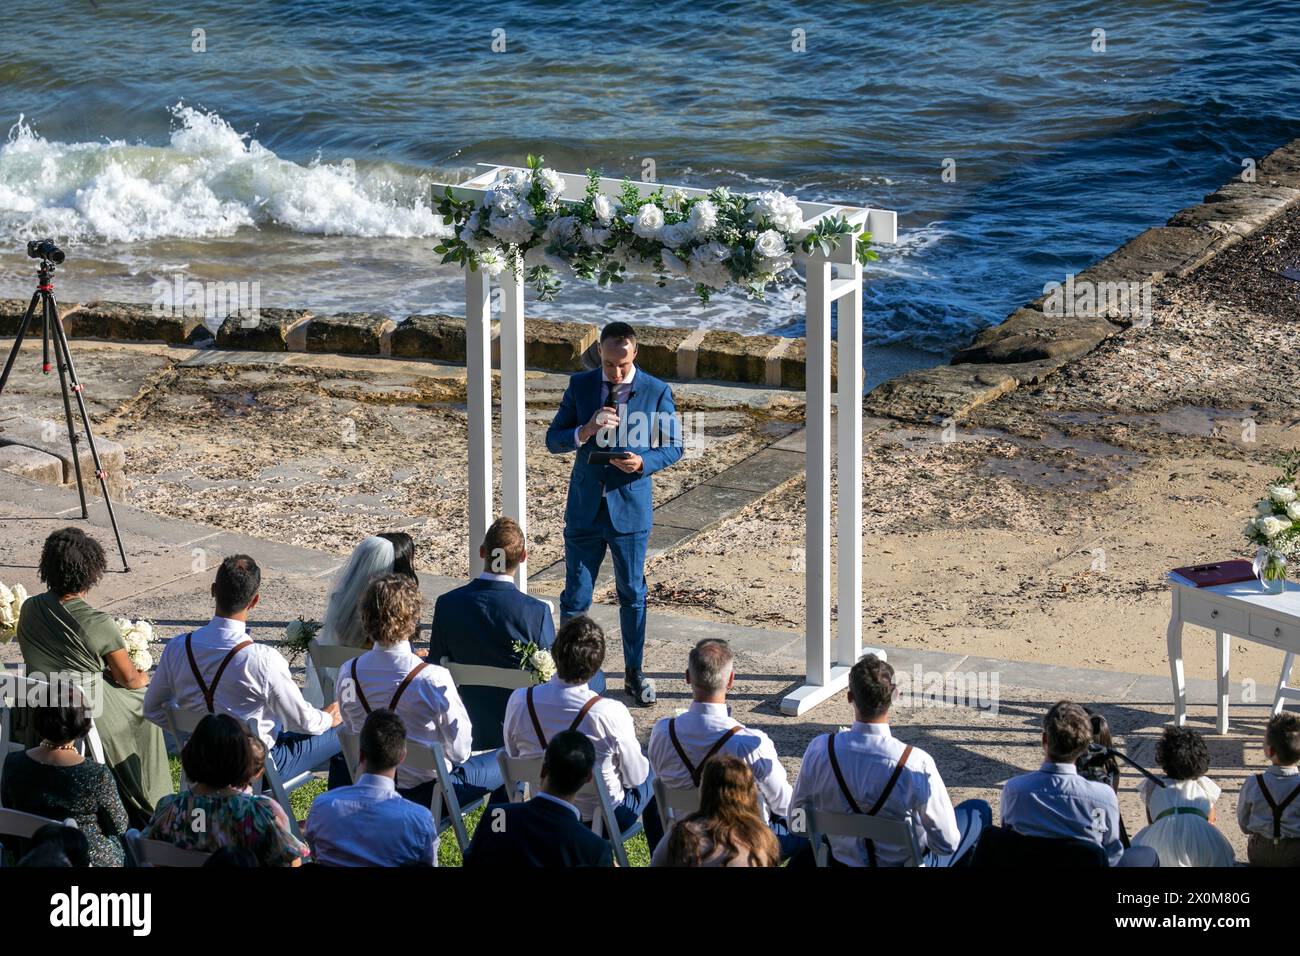 Sydney Harbour Australia, mariage sur le front de mer à Bradleys Head amphithéâtre, mariés, invités et célébrant le mariage, Nouvelle-Galles du Sud, Australie Banque D'Images